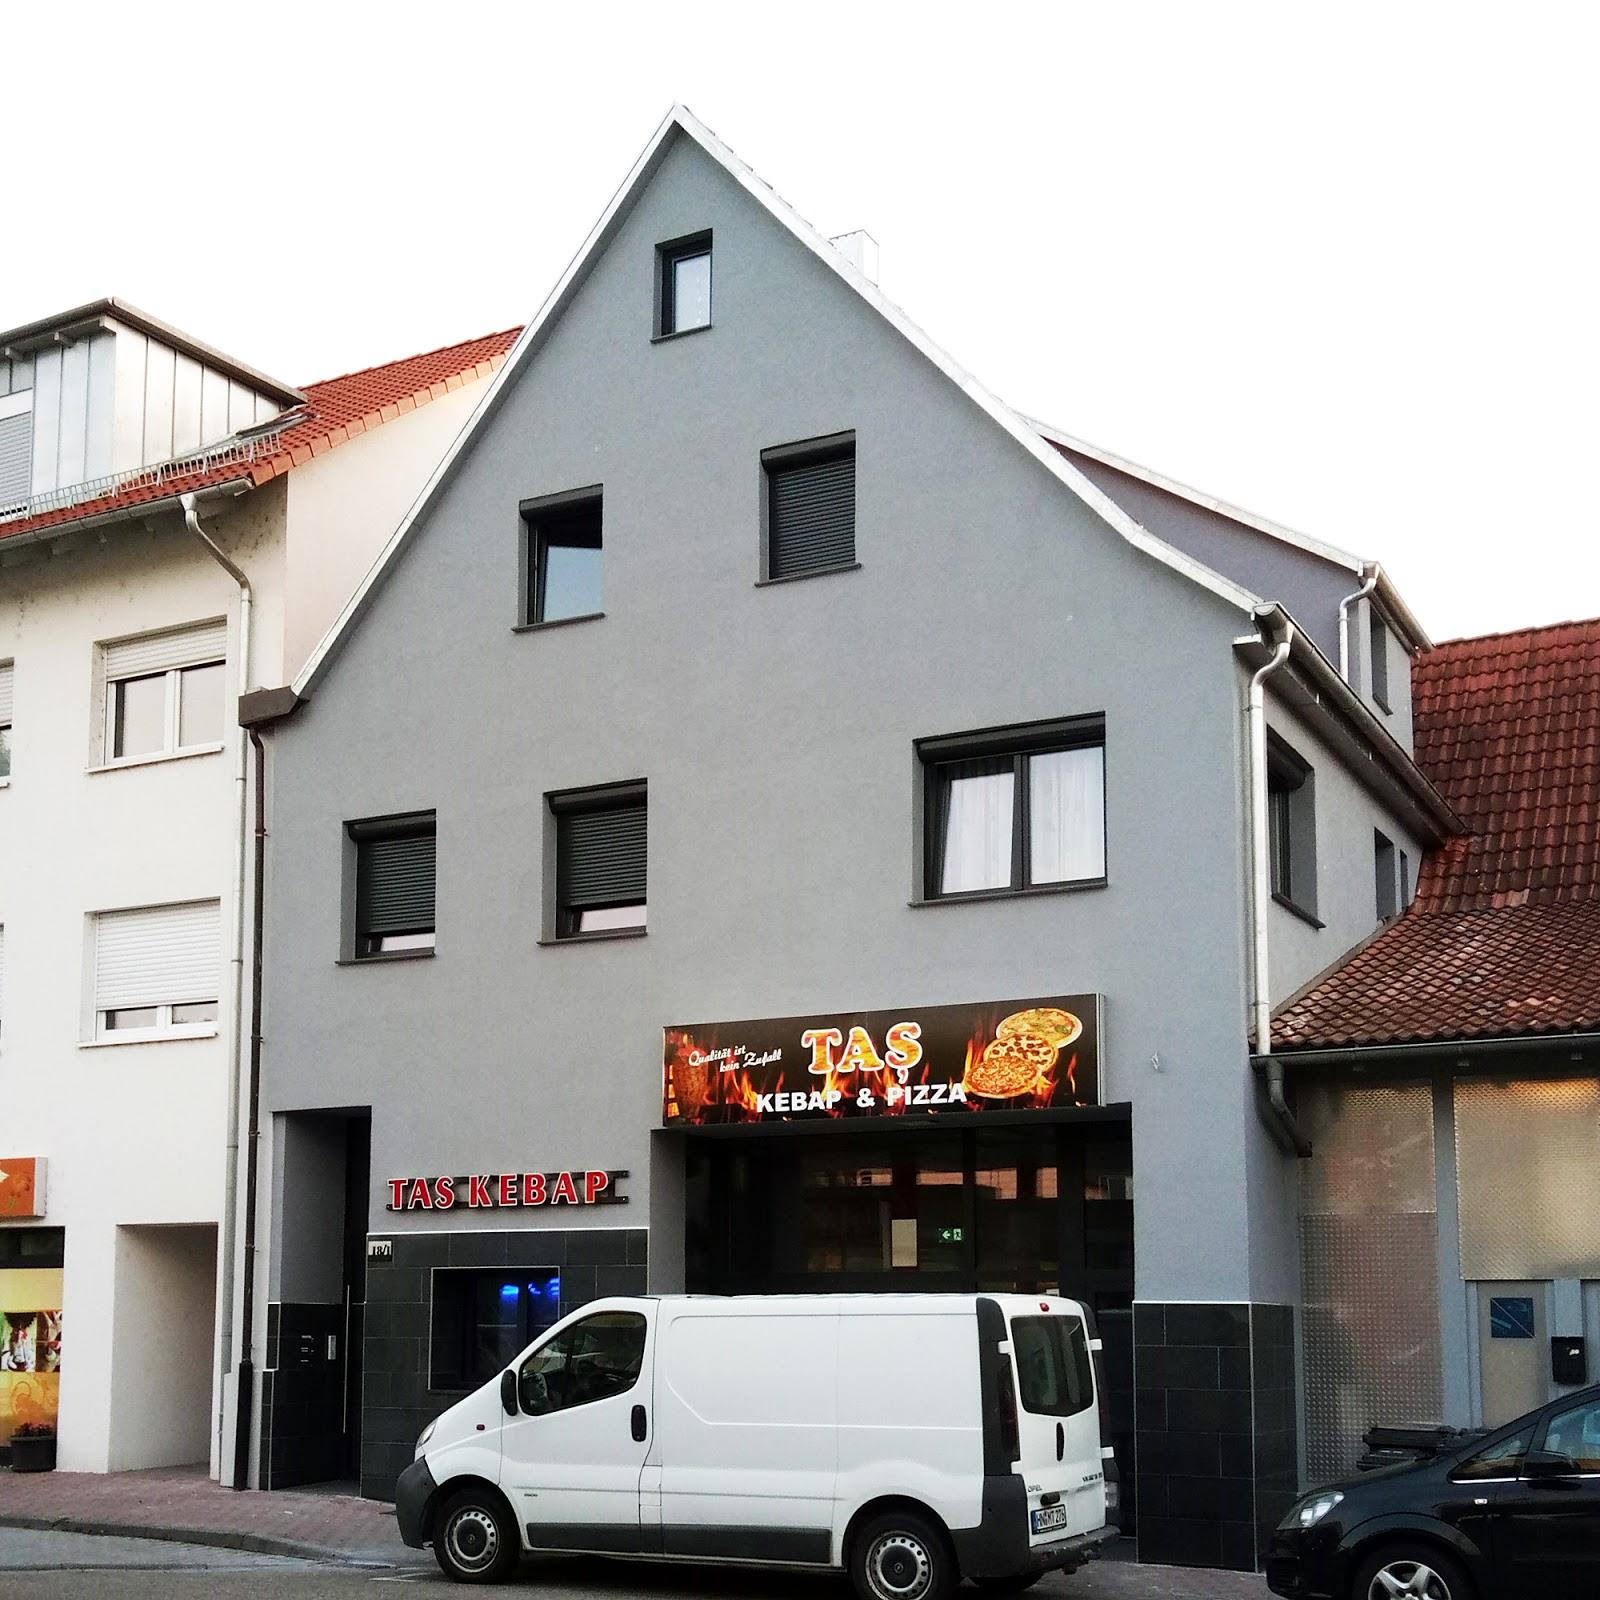 Restaurant "TAS Kebap - Türkisches Restaurant in Bad  Kochendorf | Döner - Kebap | Pizza" in  Friedrichshall